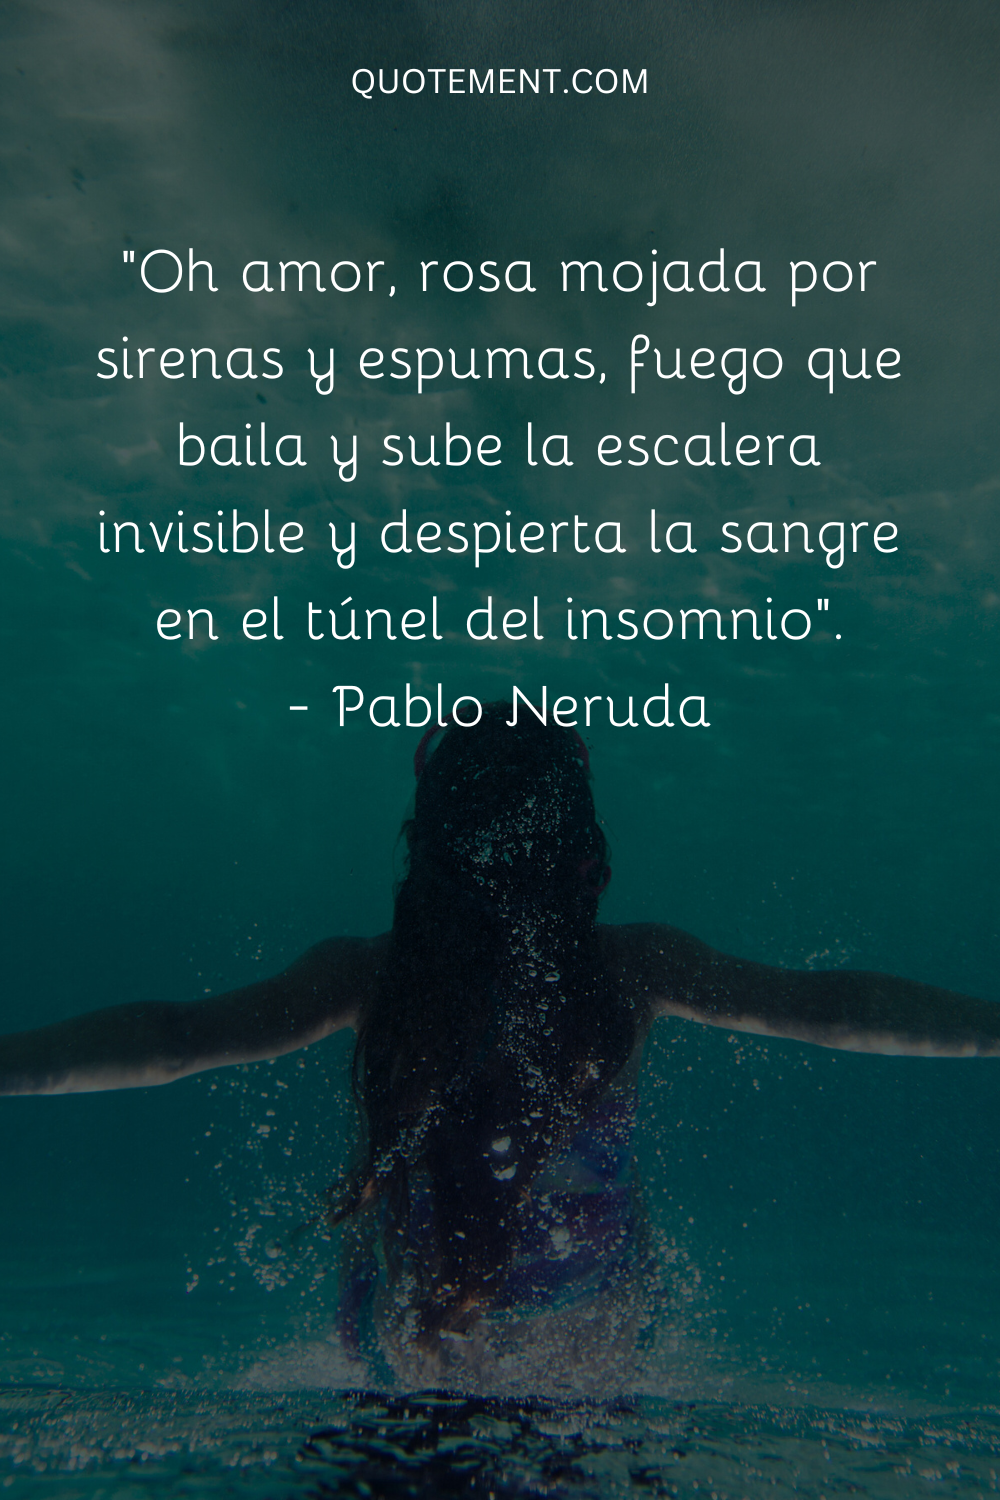 "Oh amor, rosa mojada por sirenas y espumas, fuego que baila y sube la escalera invisible y despierta la sangre en el túnel del desvelo". - Pablo Neruda